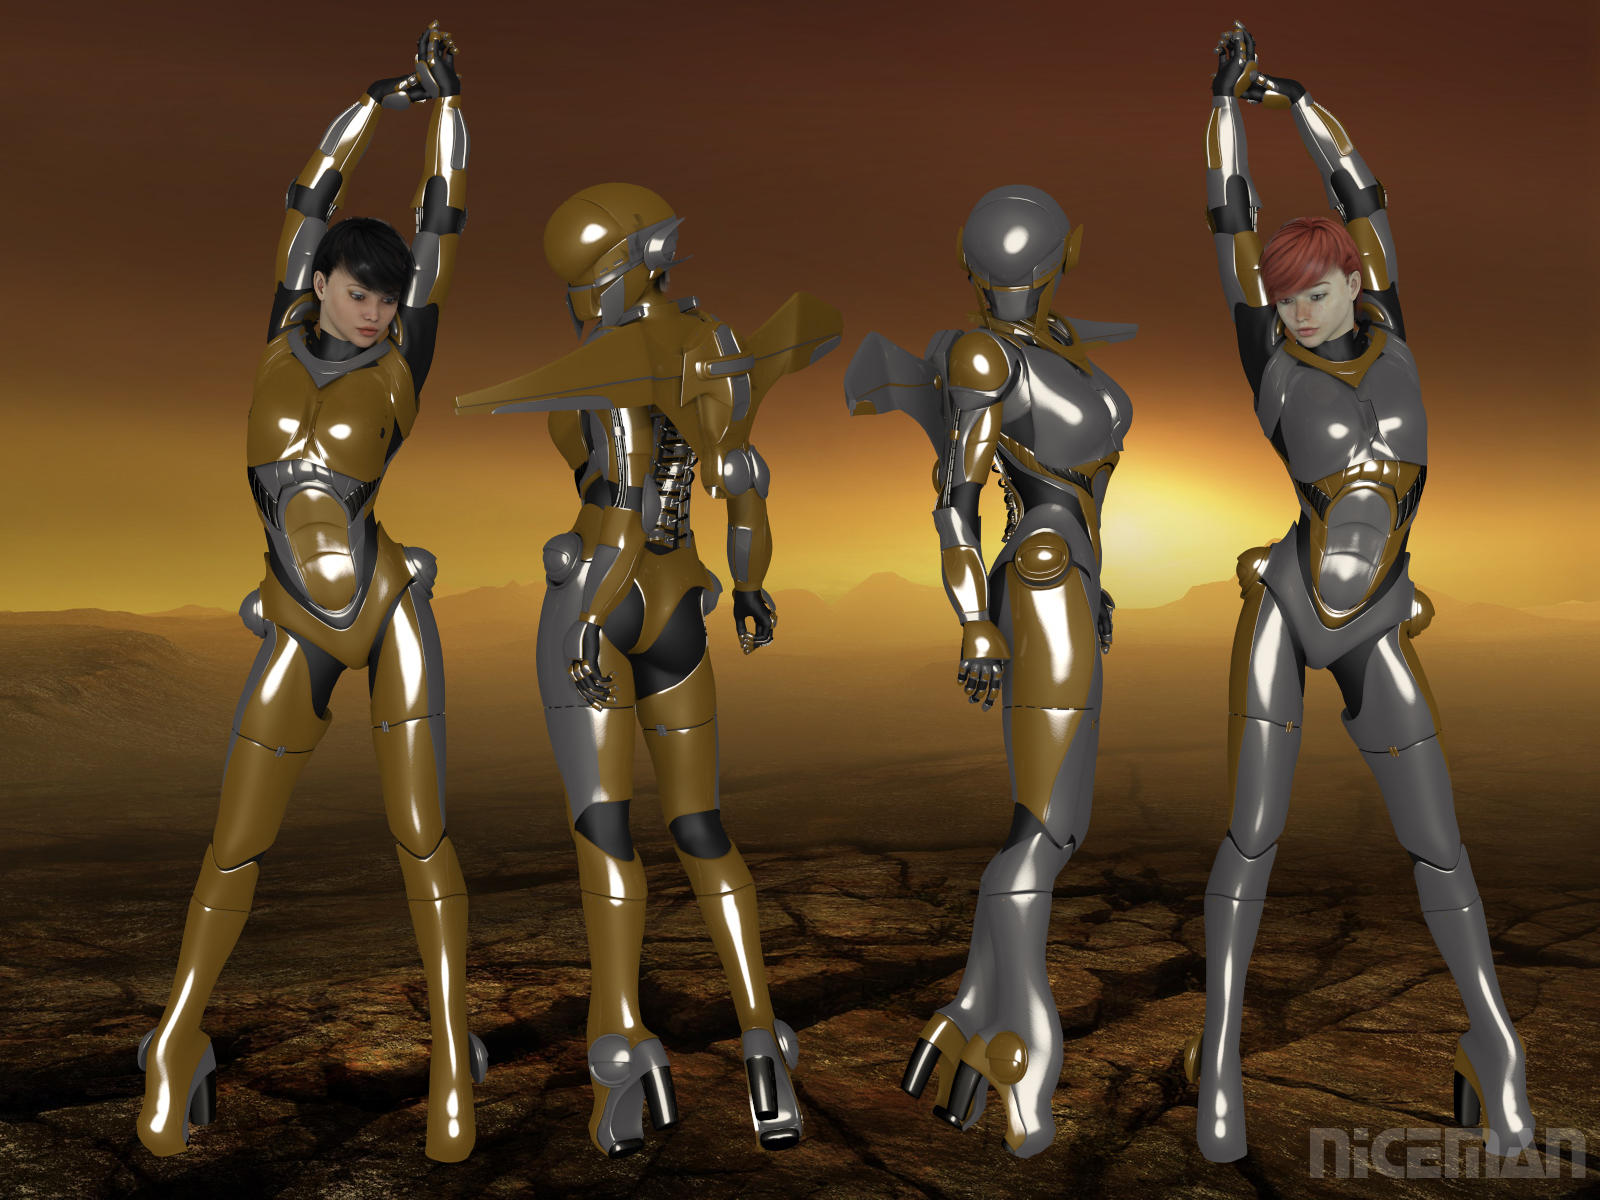 Sci-Fi Fantasy Armour Costume Yoga,TAFI Anime Armor Printed Leggings Limite...